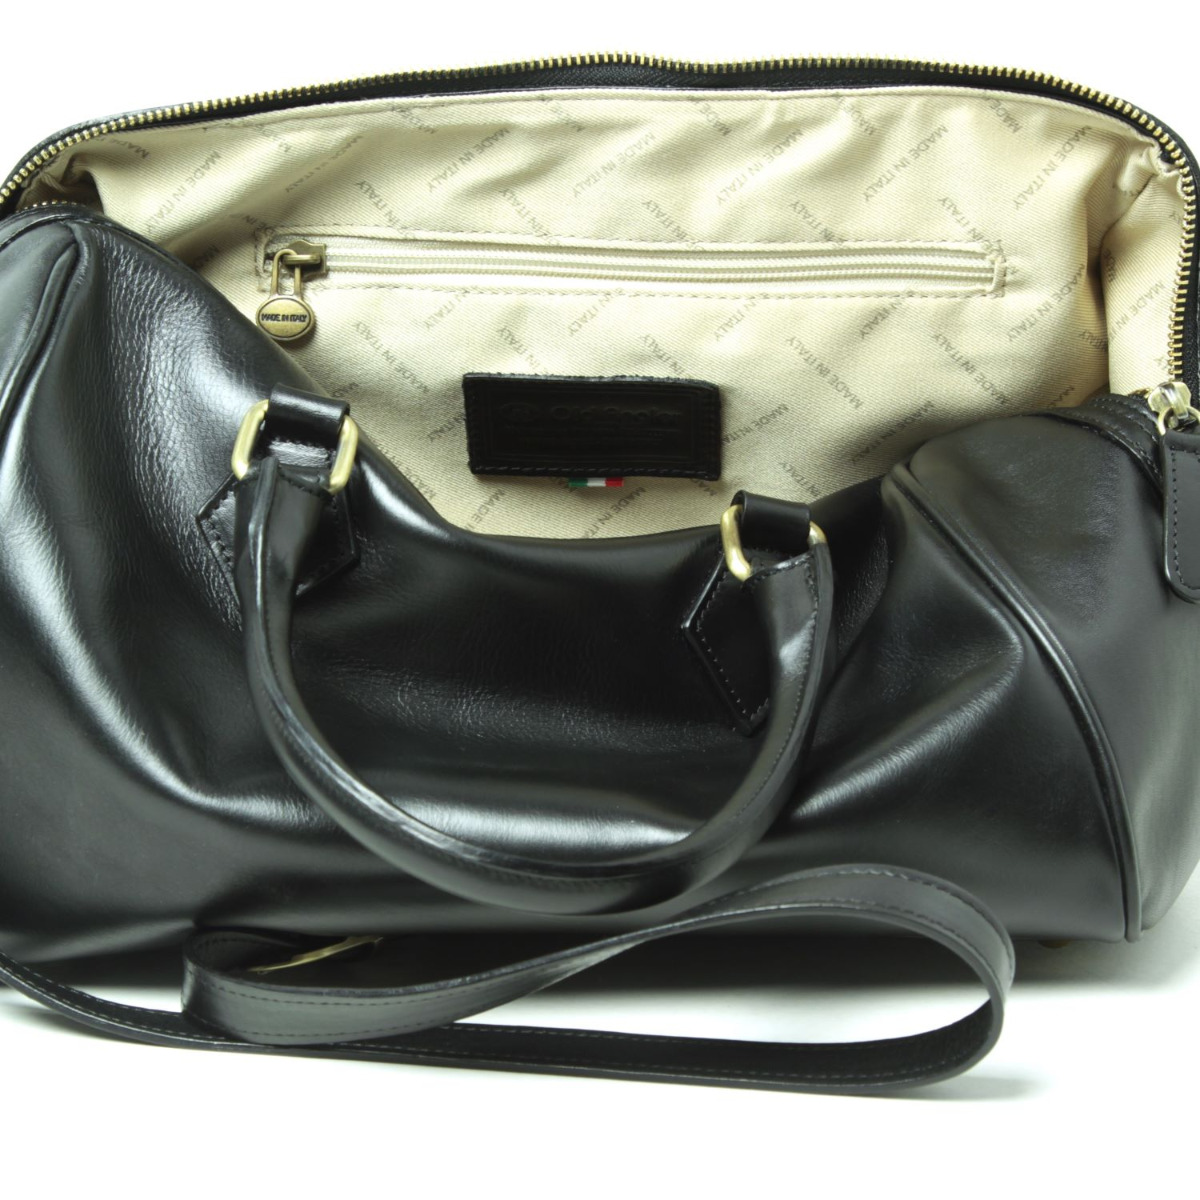 Double handled shoulder bag - black|416091NE|Old Angler Firenze